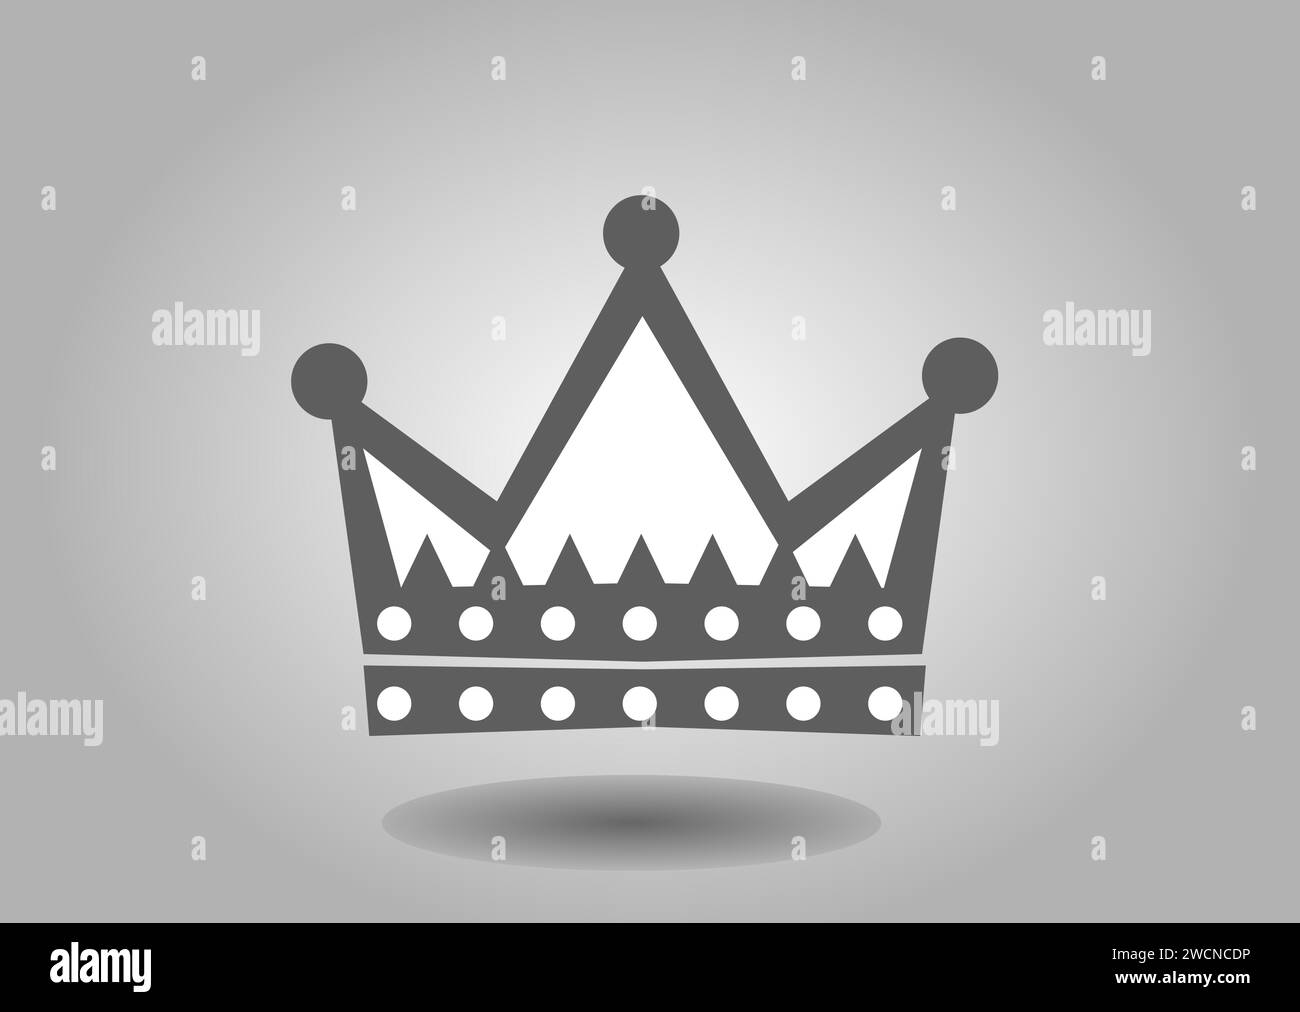 Dunkle Krone Vektor-Illustration auf grauem Hintergrund Stock Vektor